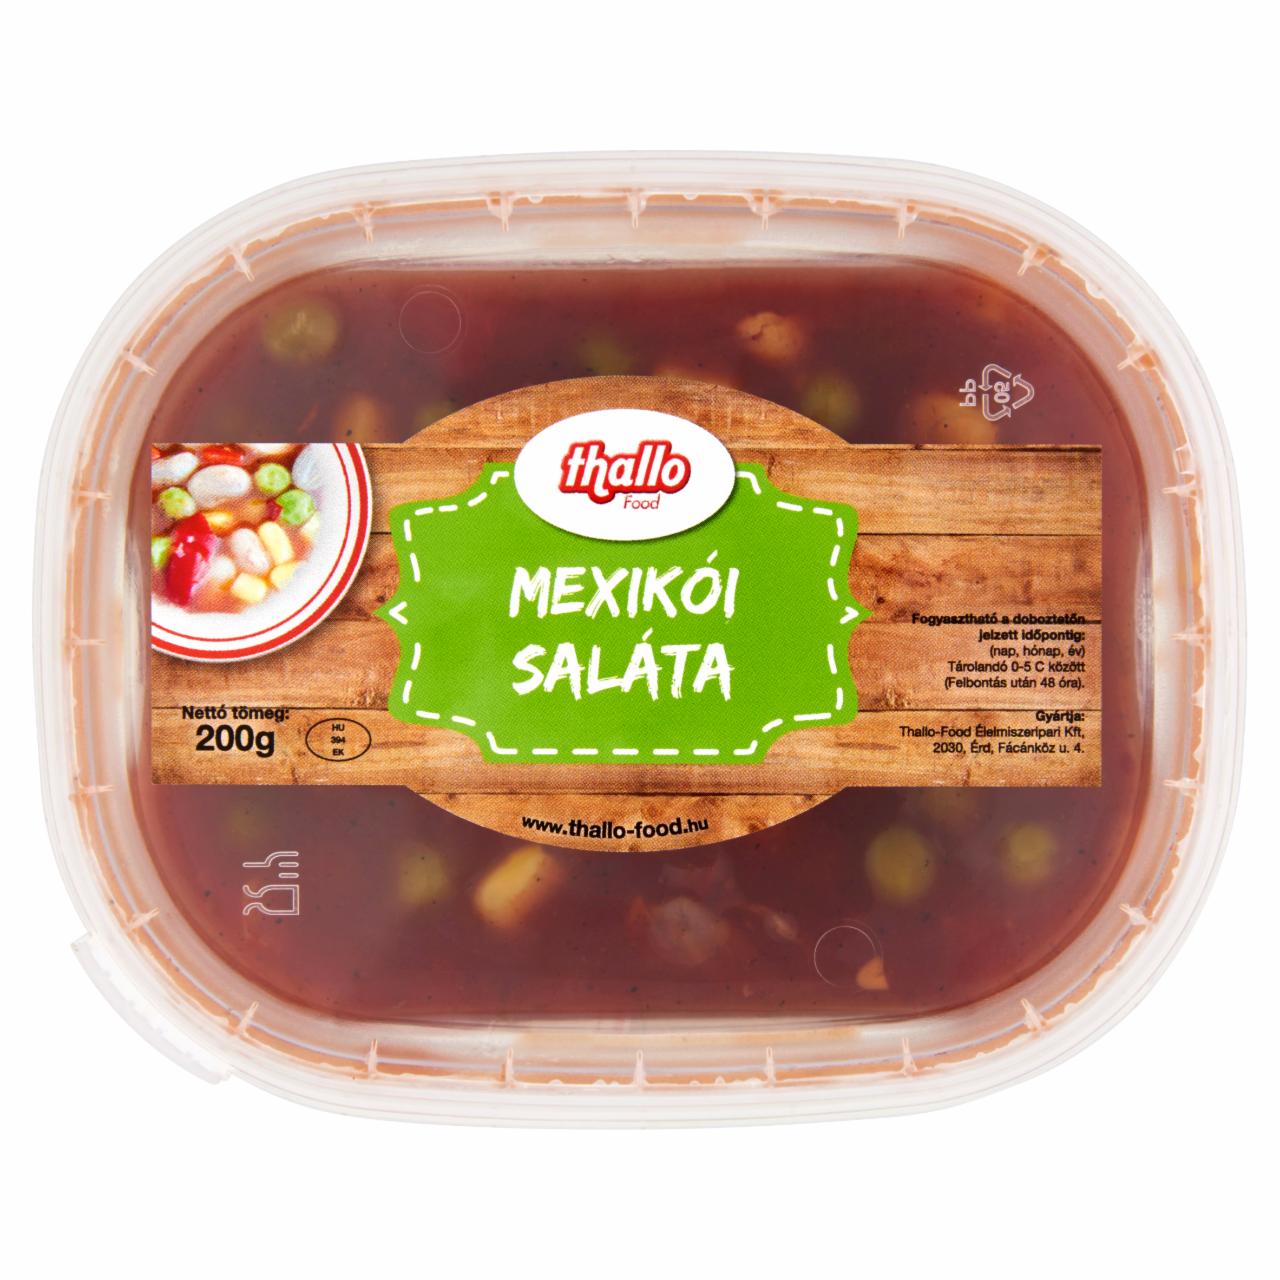 Képek - Thallo Food mexikói saláta 200 g